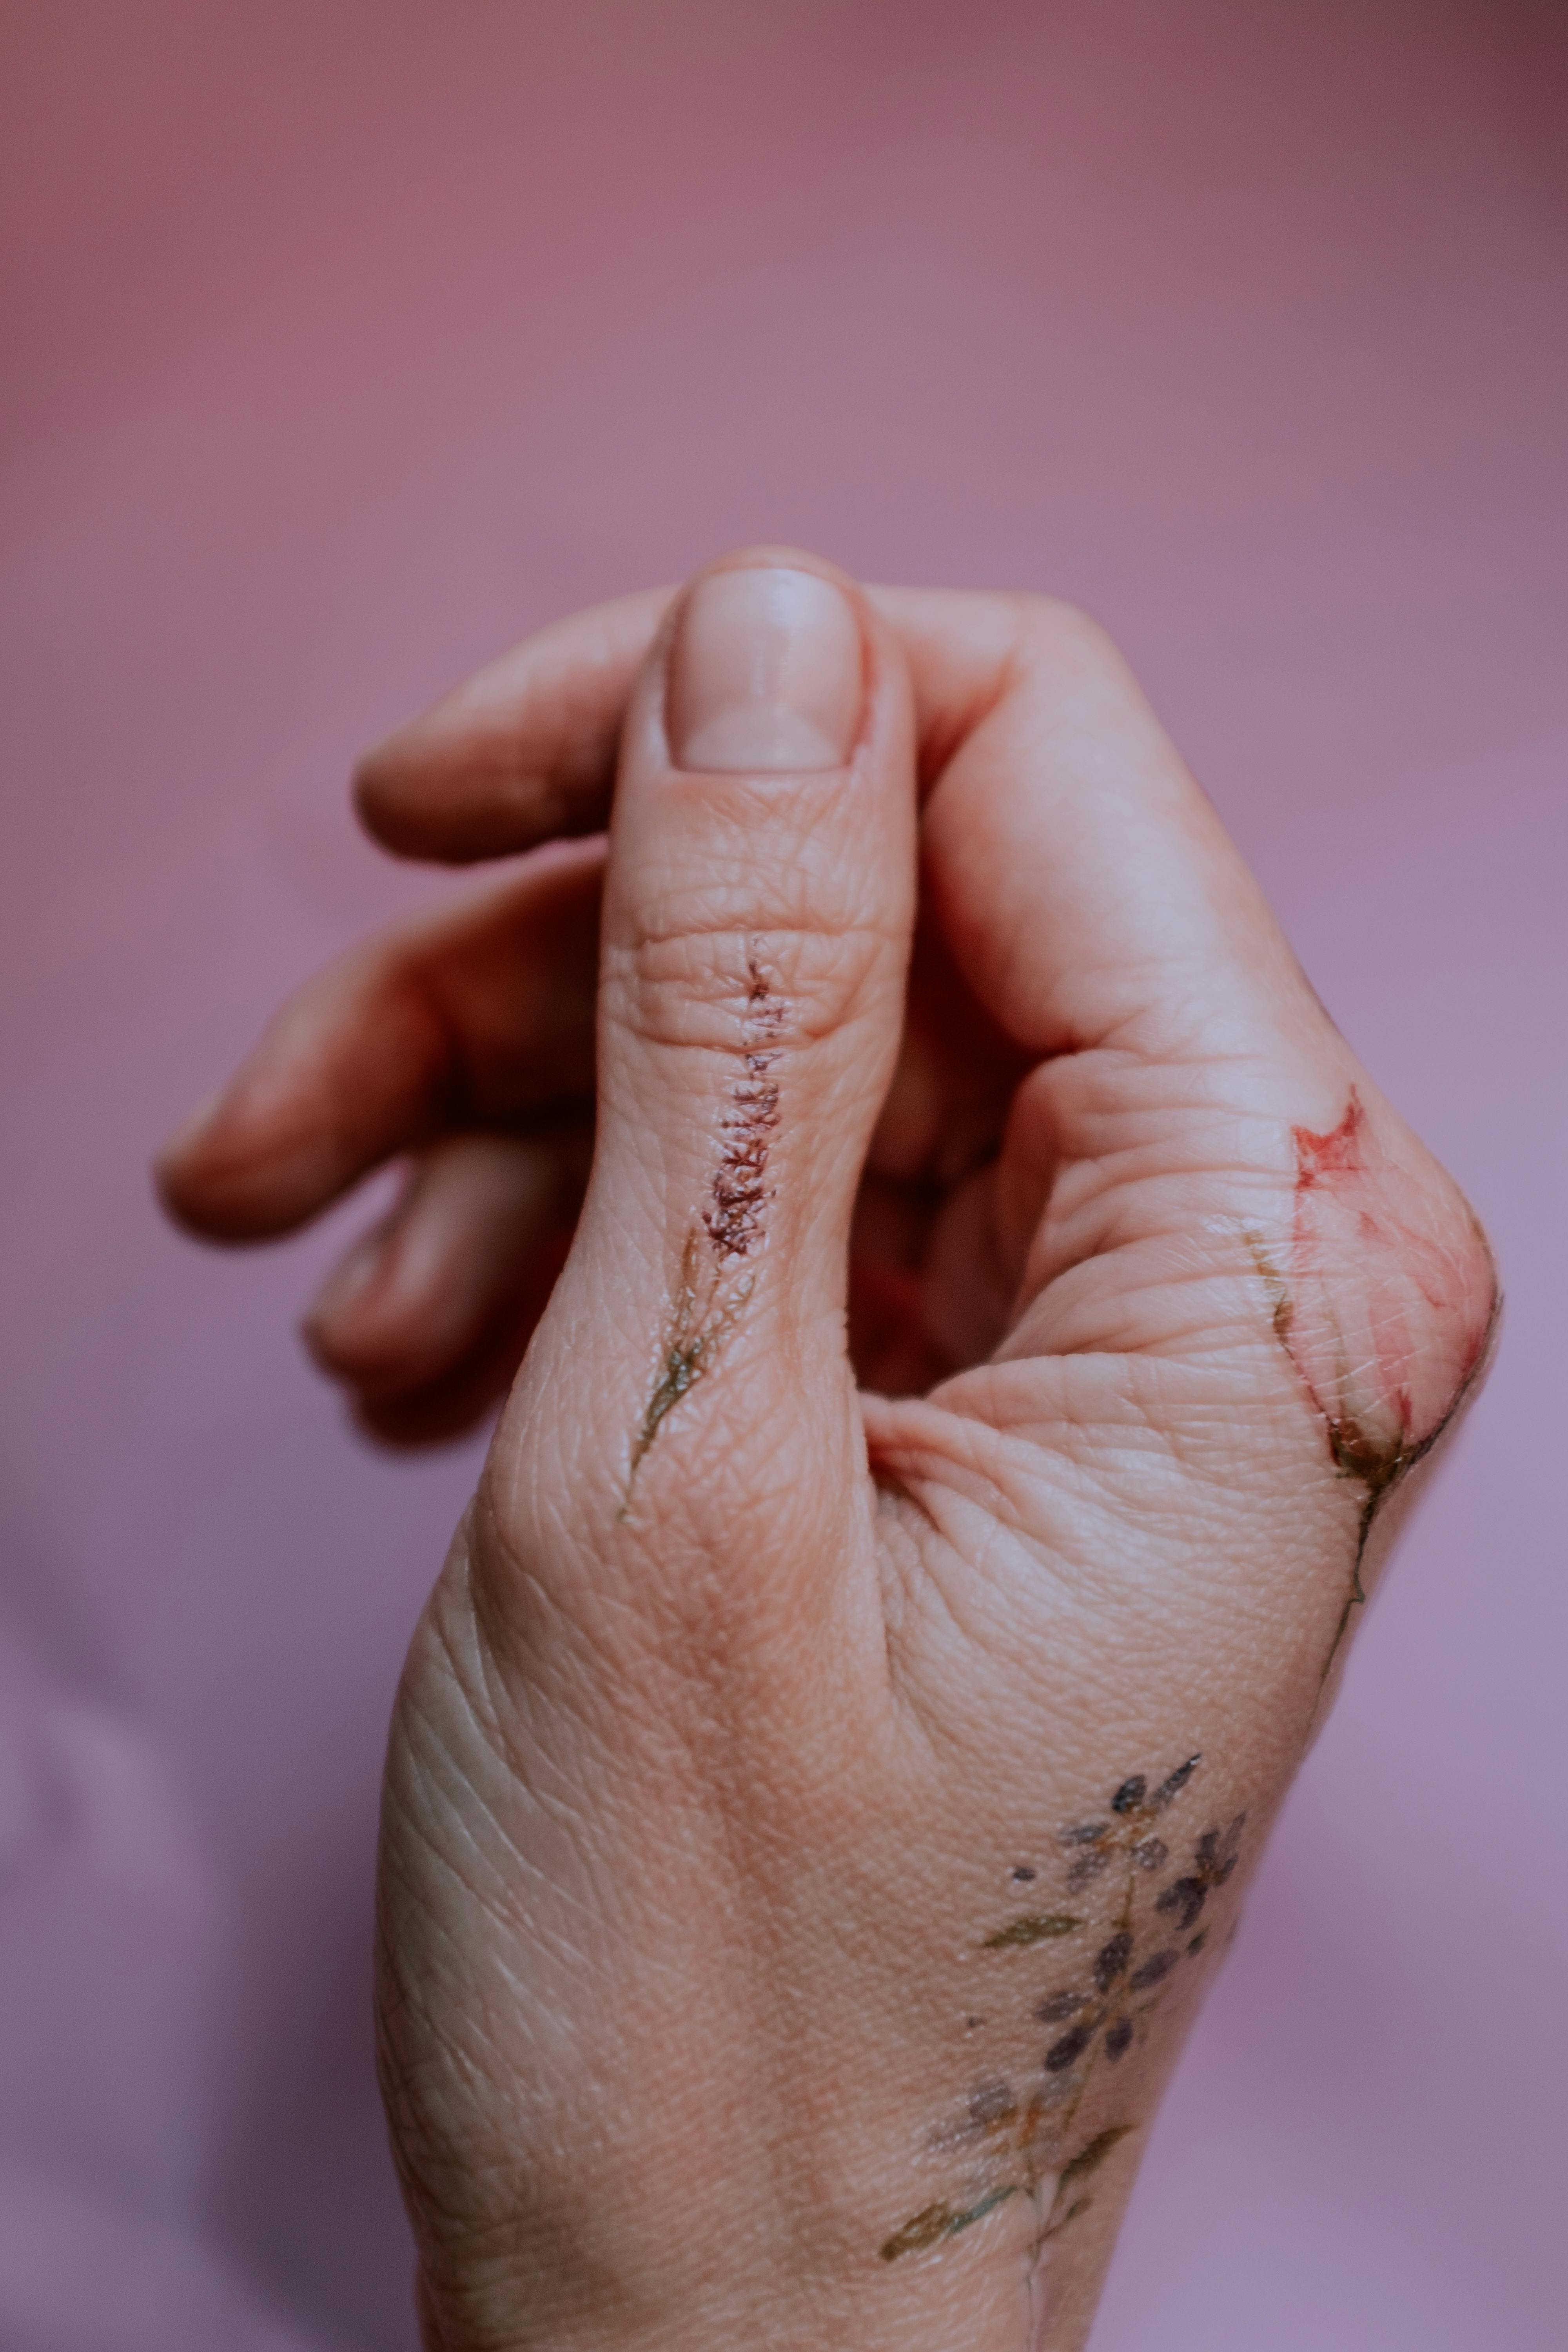 Hand poked ornamental tattoo on the thumb - Tattoogrid.net